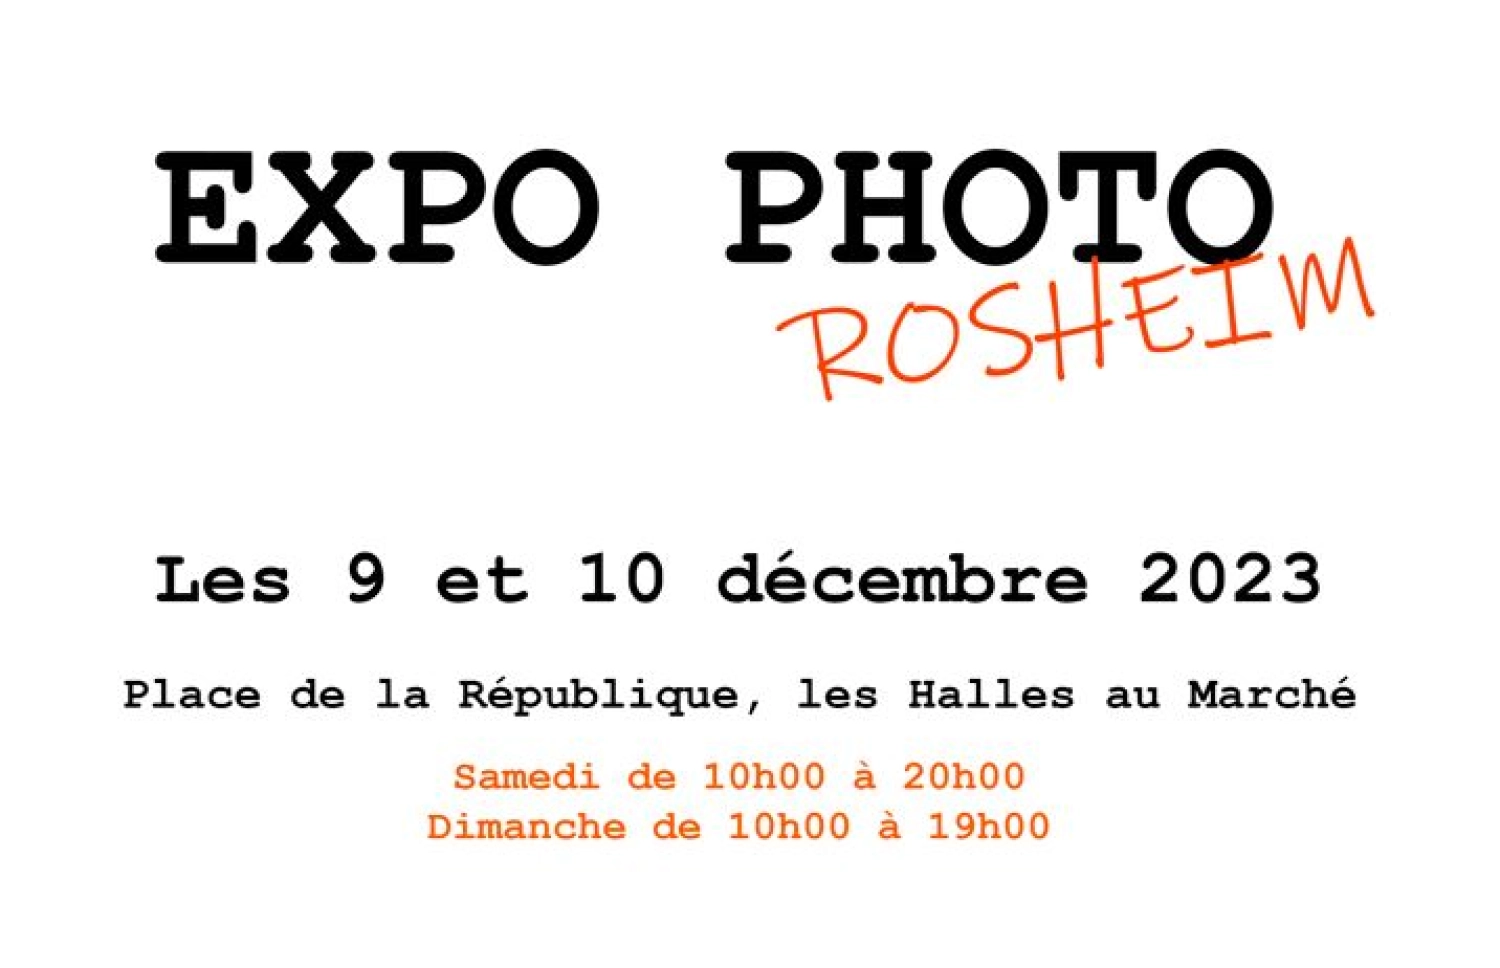 image-Expo Photo Rosheim 9-10 décembre 2023